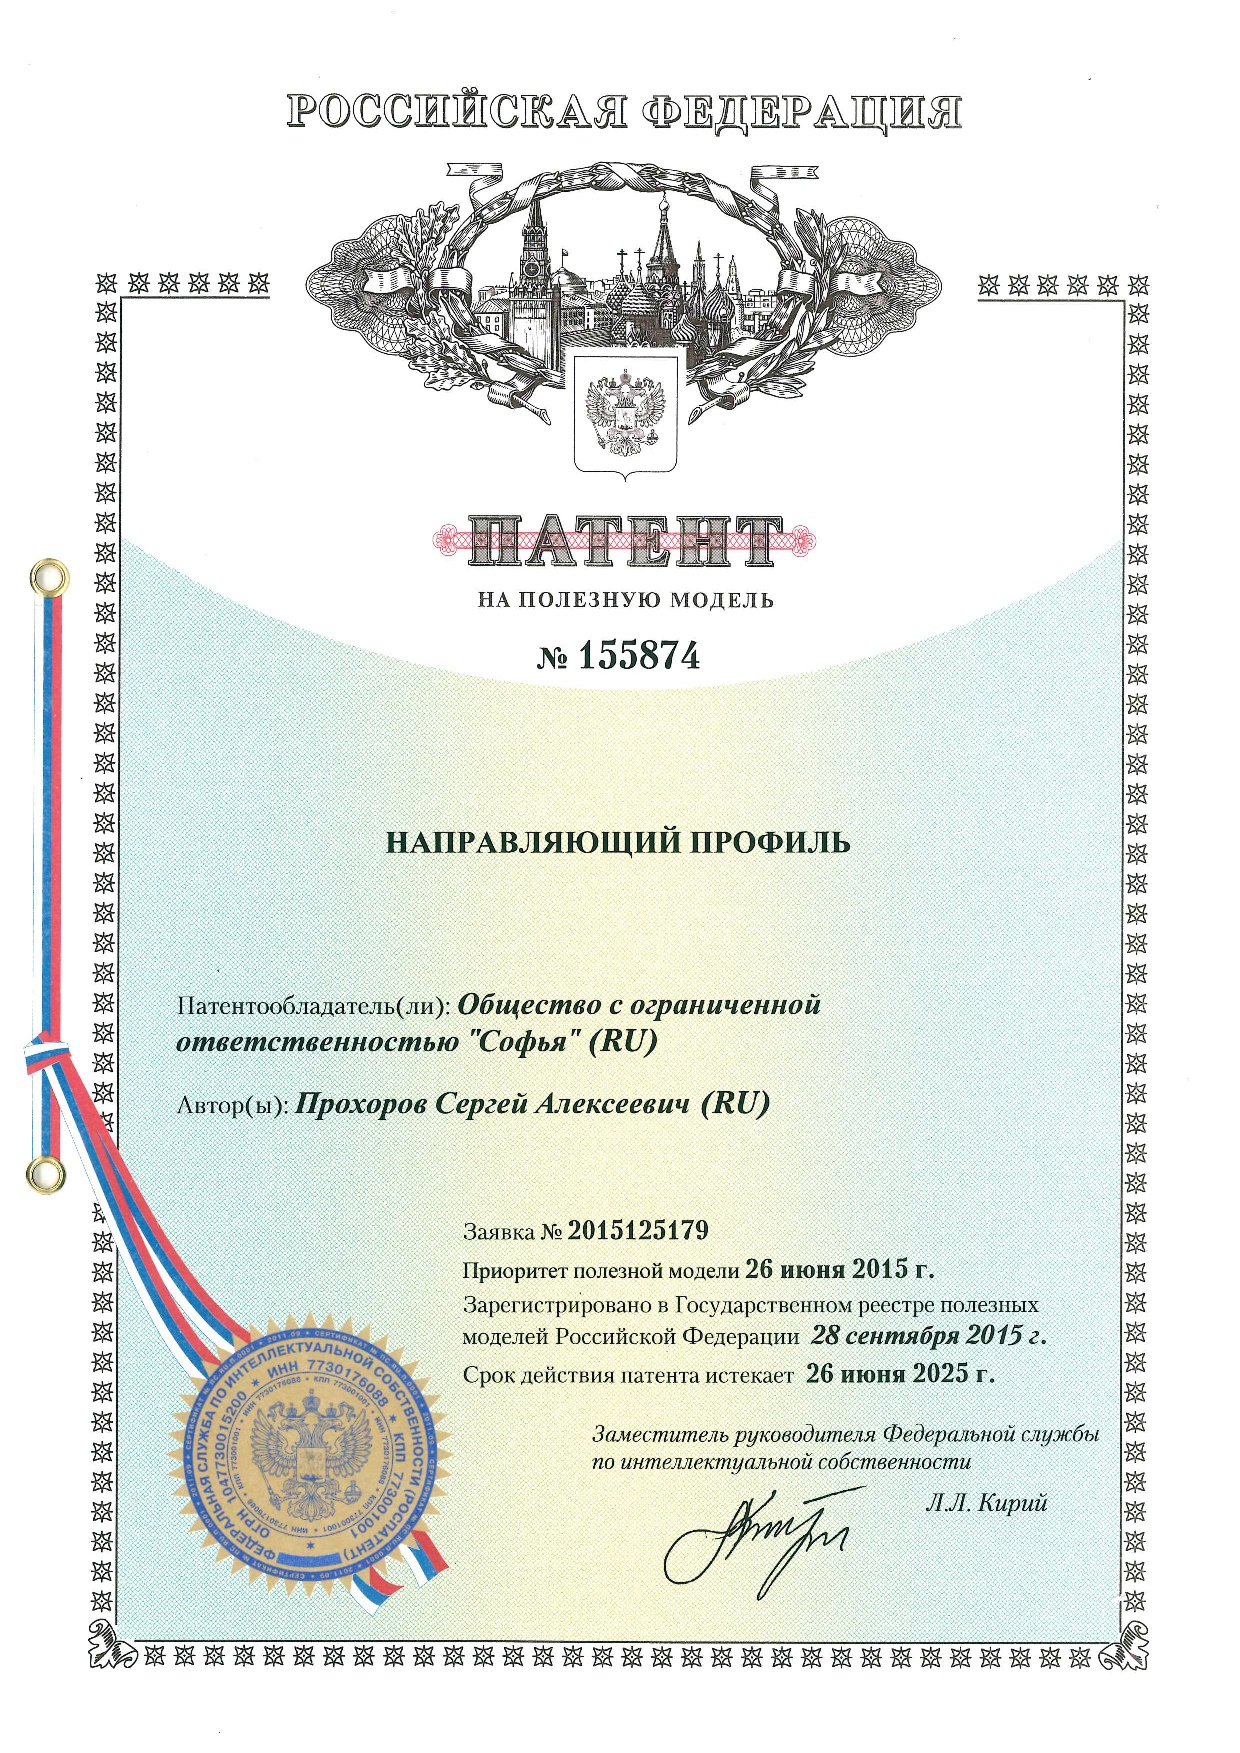 patent-rf-napravlyayushchiy-profil-large